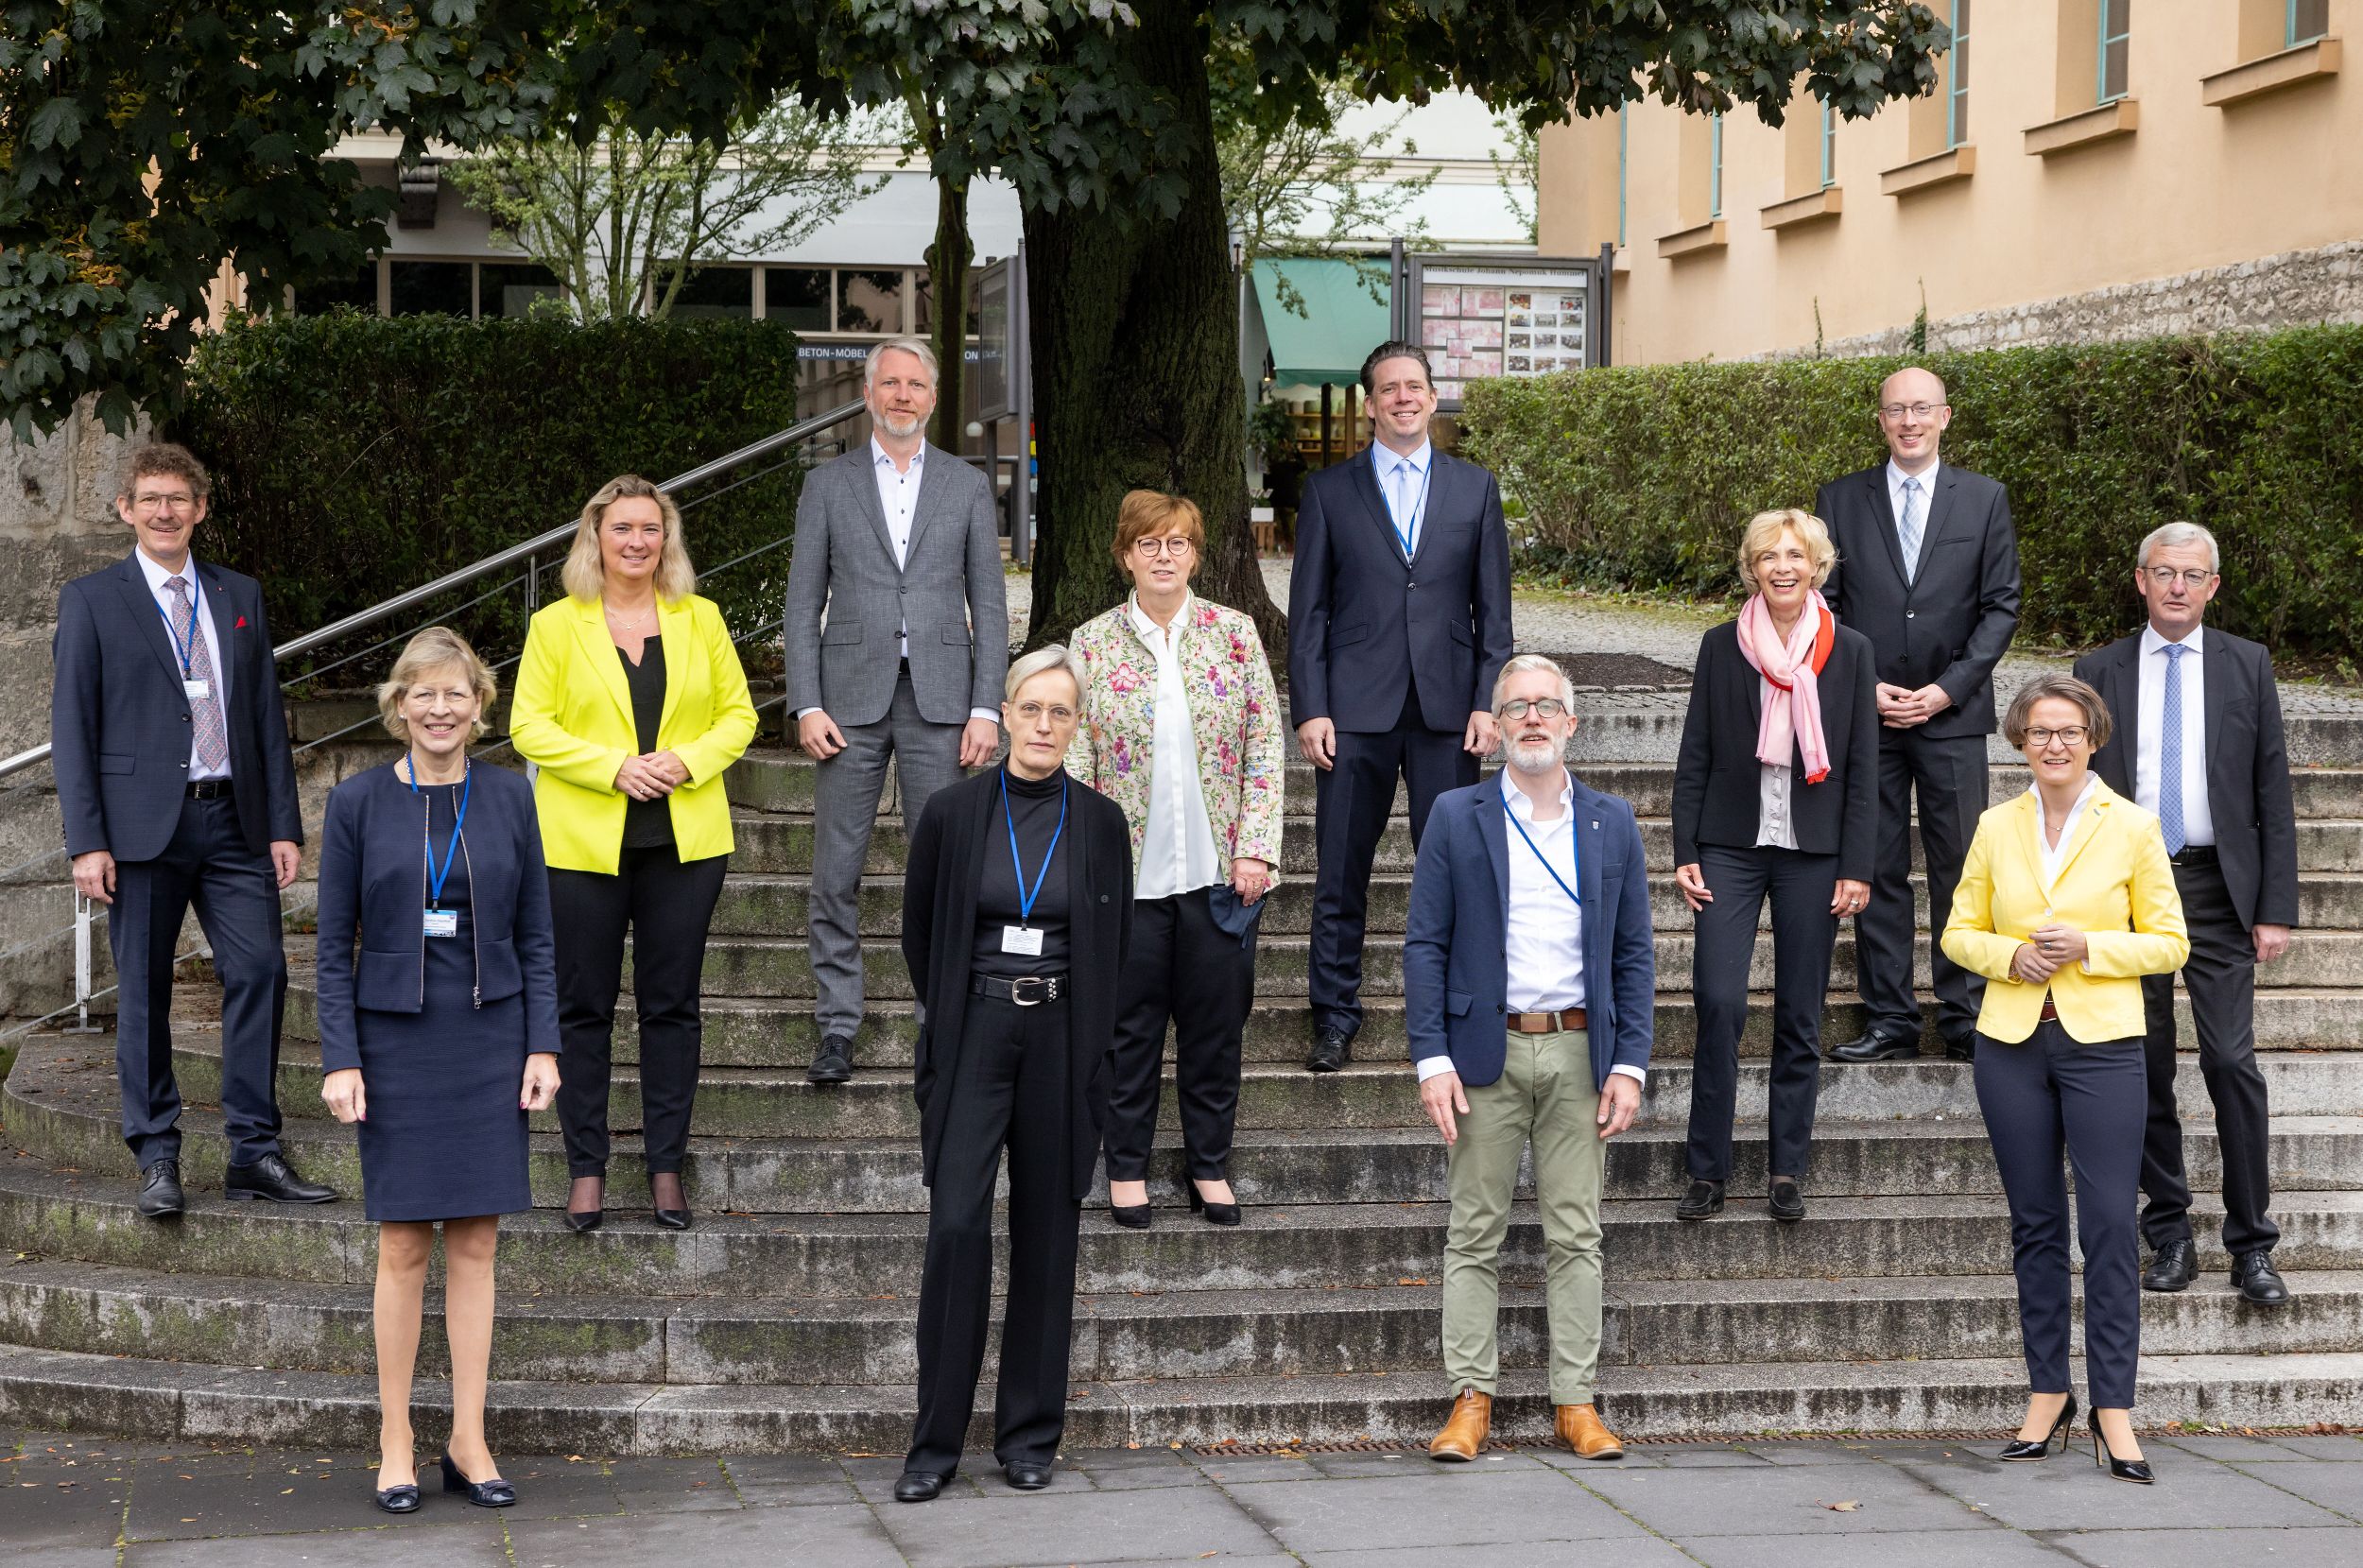 Die Teilnehmer der Bauministerkonferenz 2020 in Weimar. Copyright: Michael Reichel,
 arifotos.